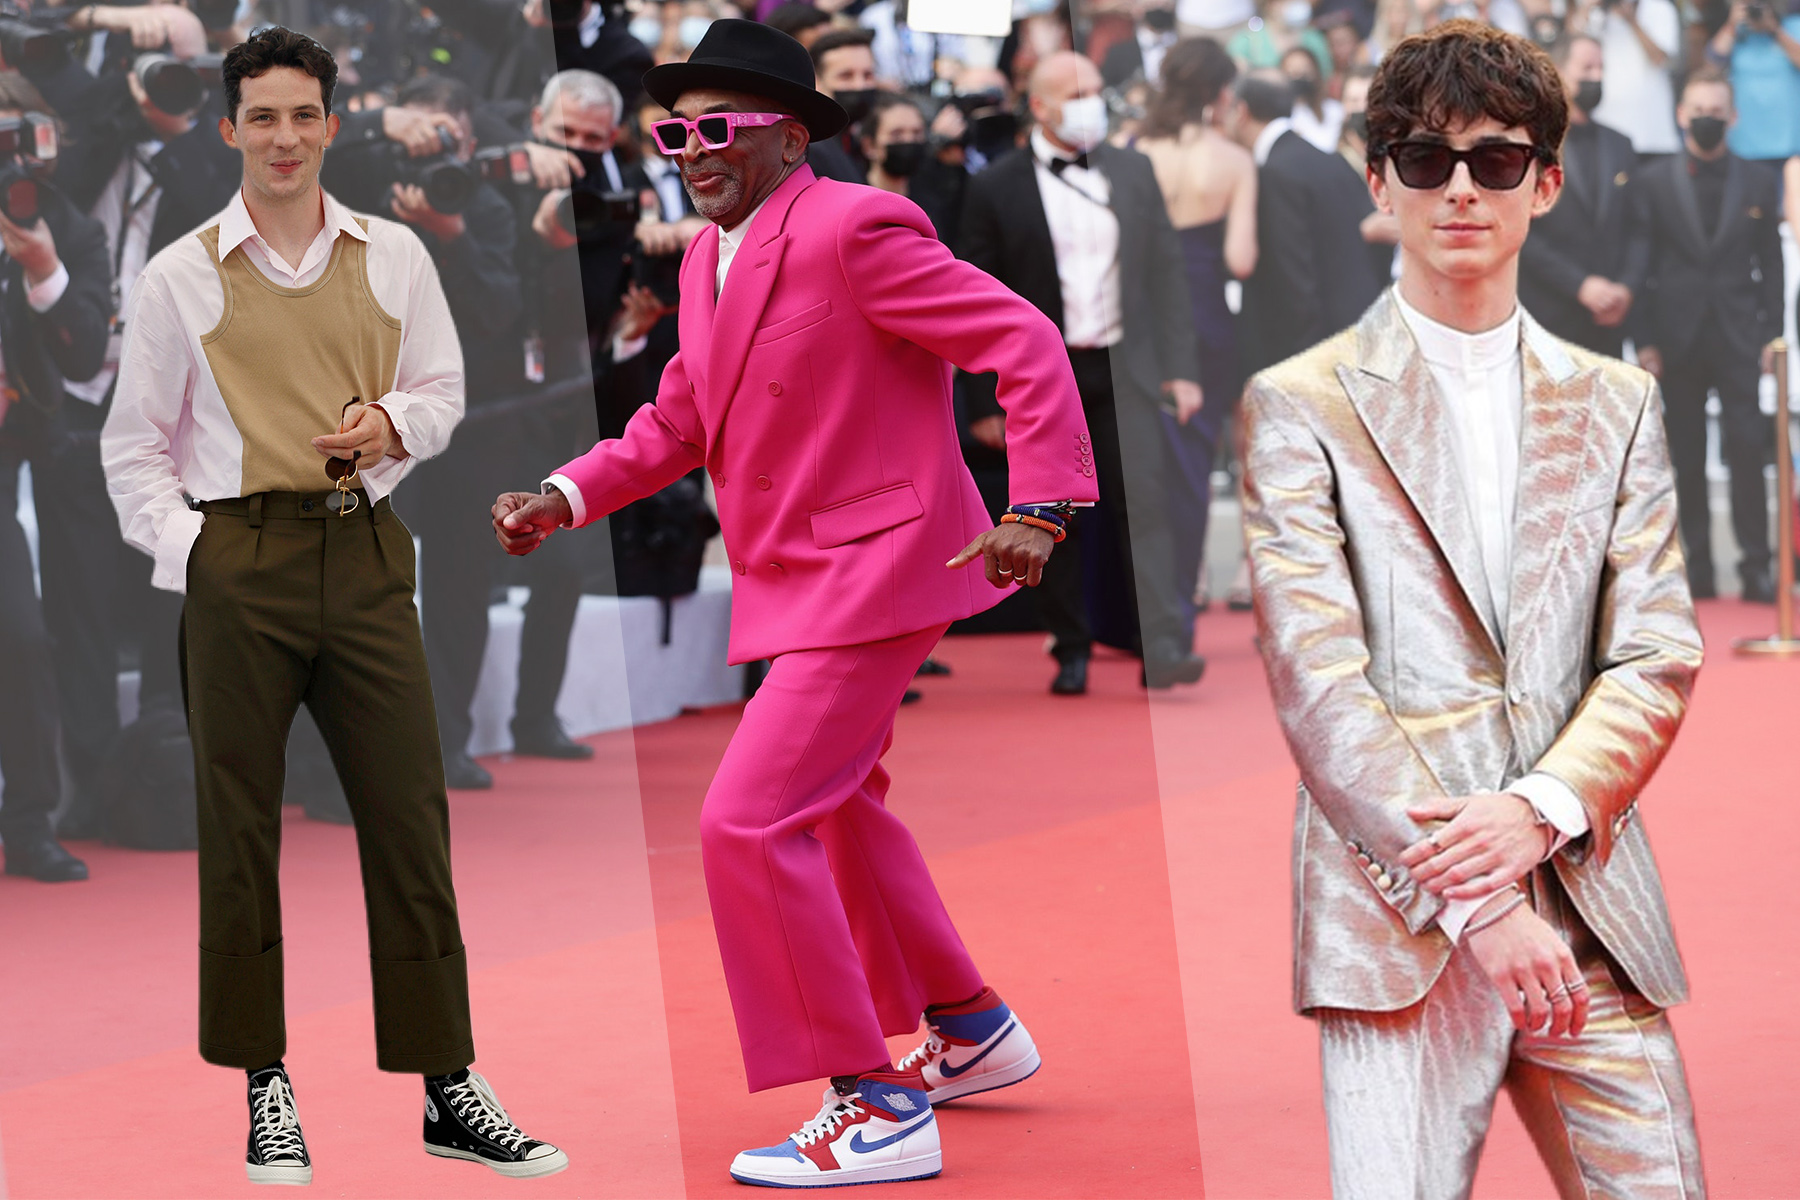 Die besten Outfits vom Cannes Film Festival 2021